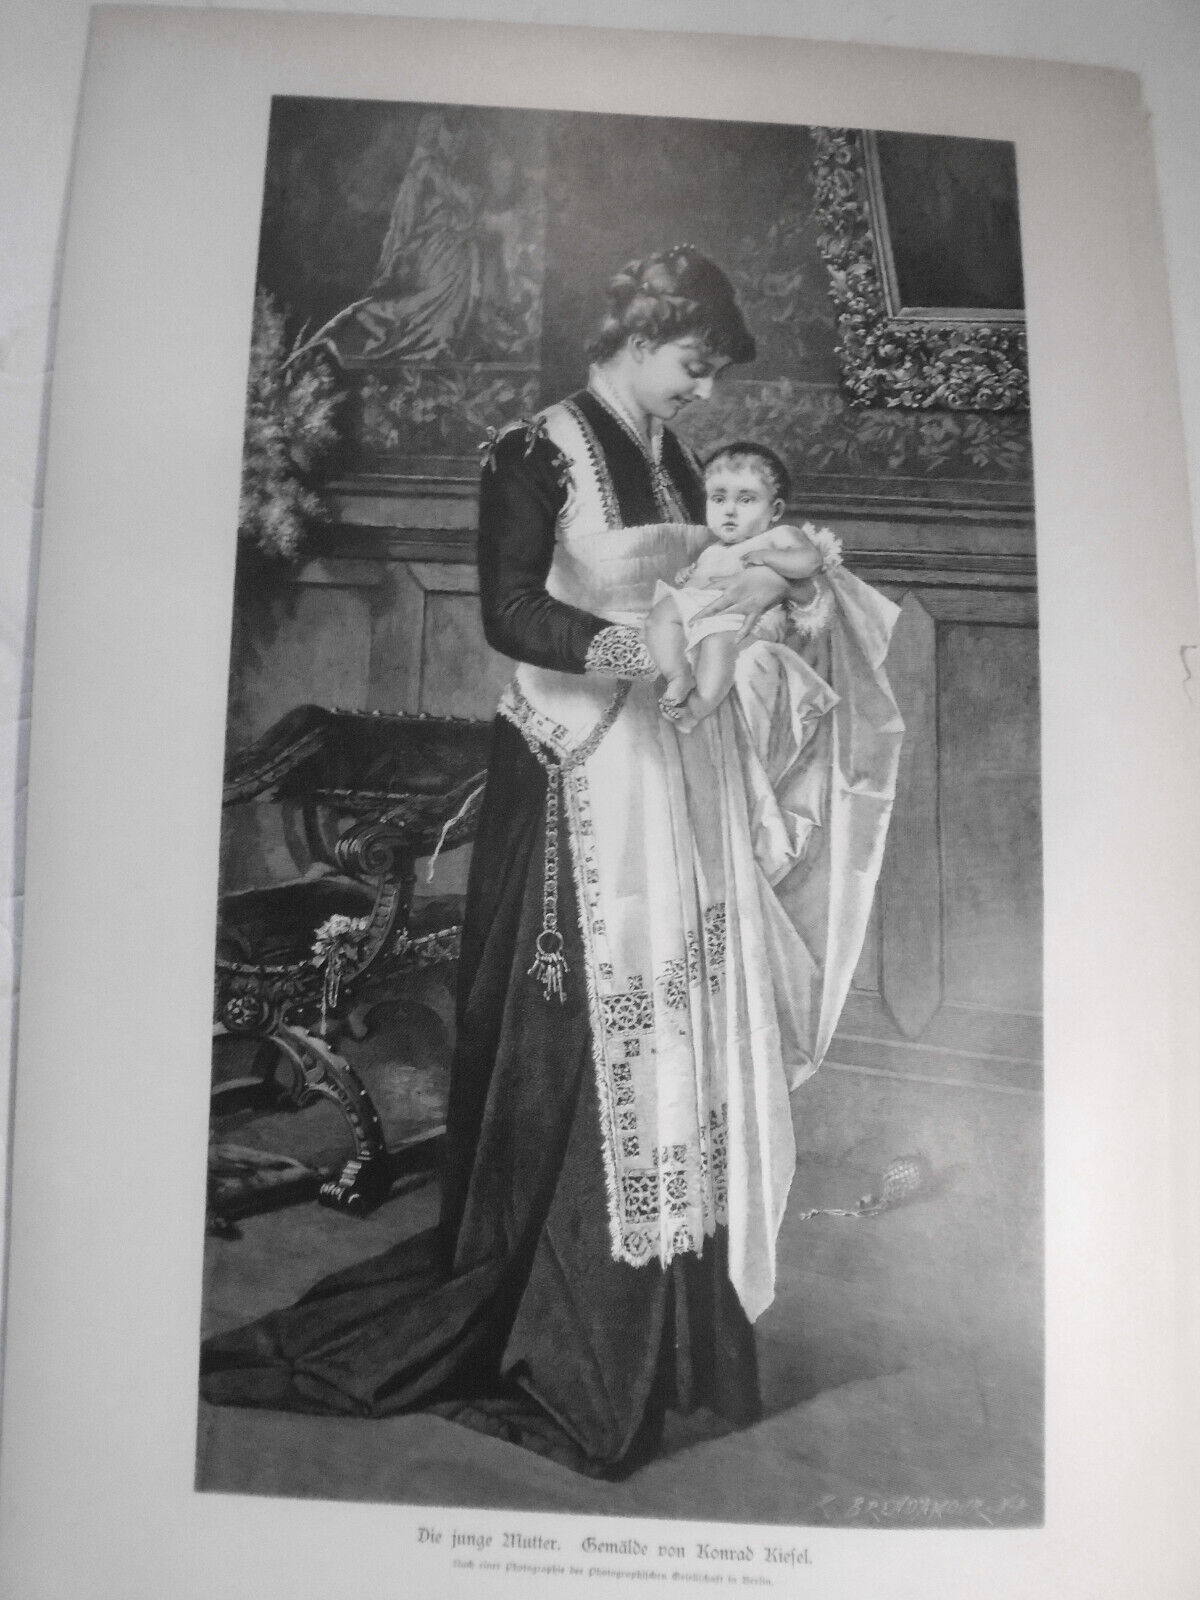 Die junge Mutter, von Konrad Kiesel  --  1882